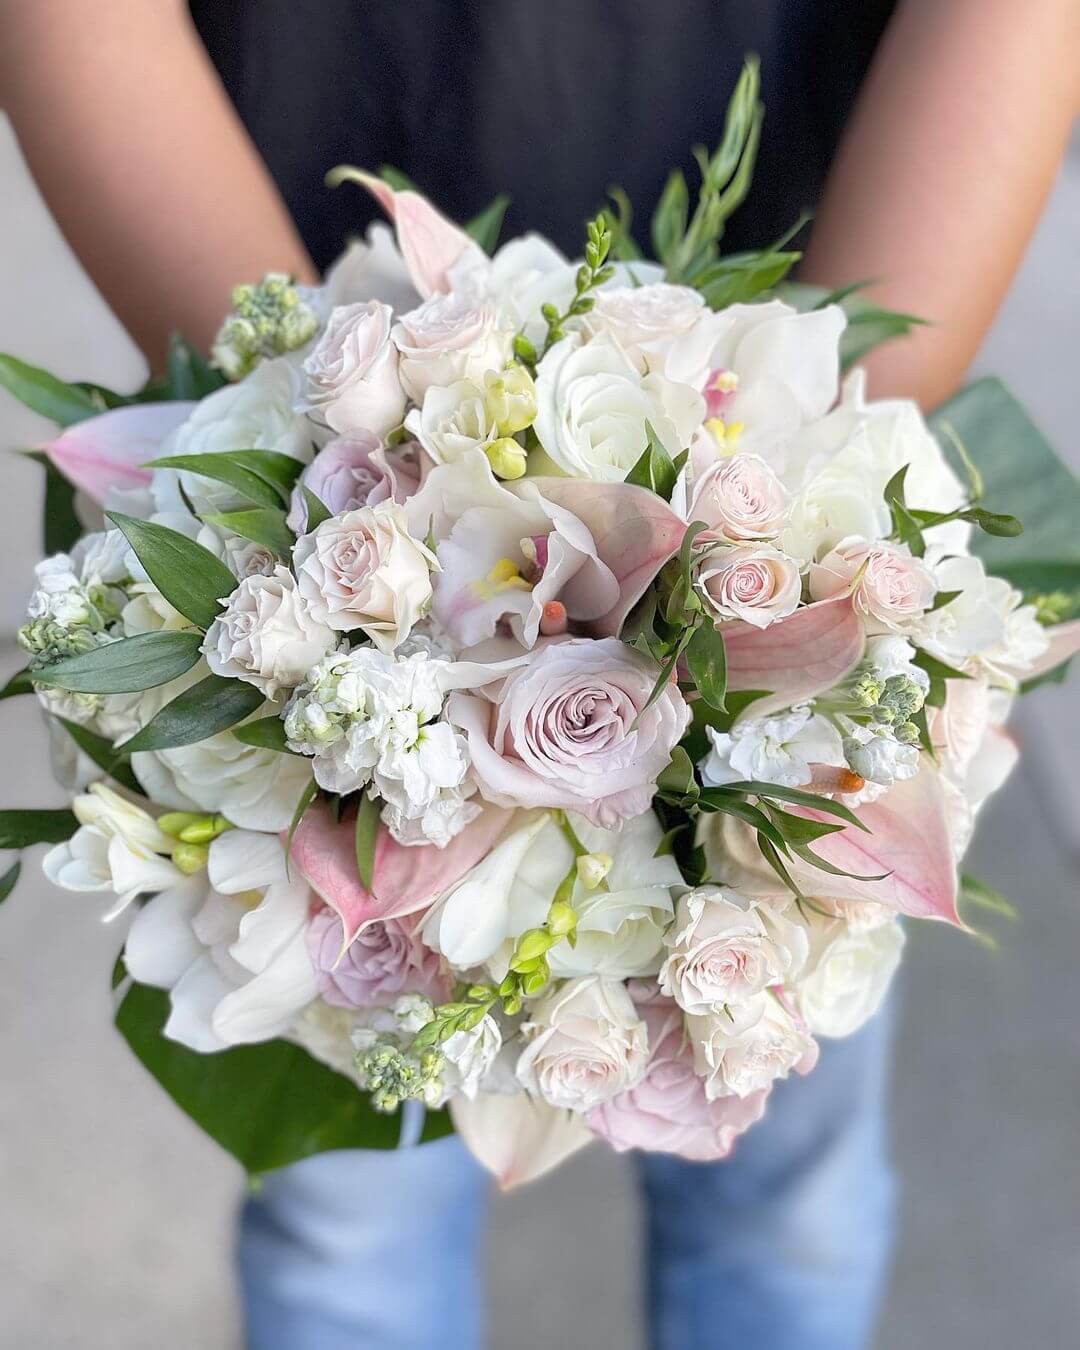 Western Wedding Bouquet Designs Simple White Wedding Bouquet